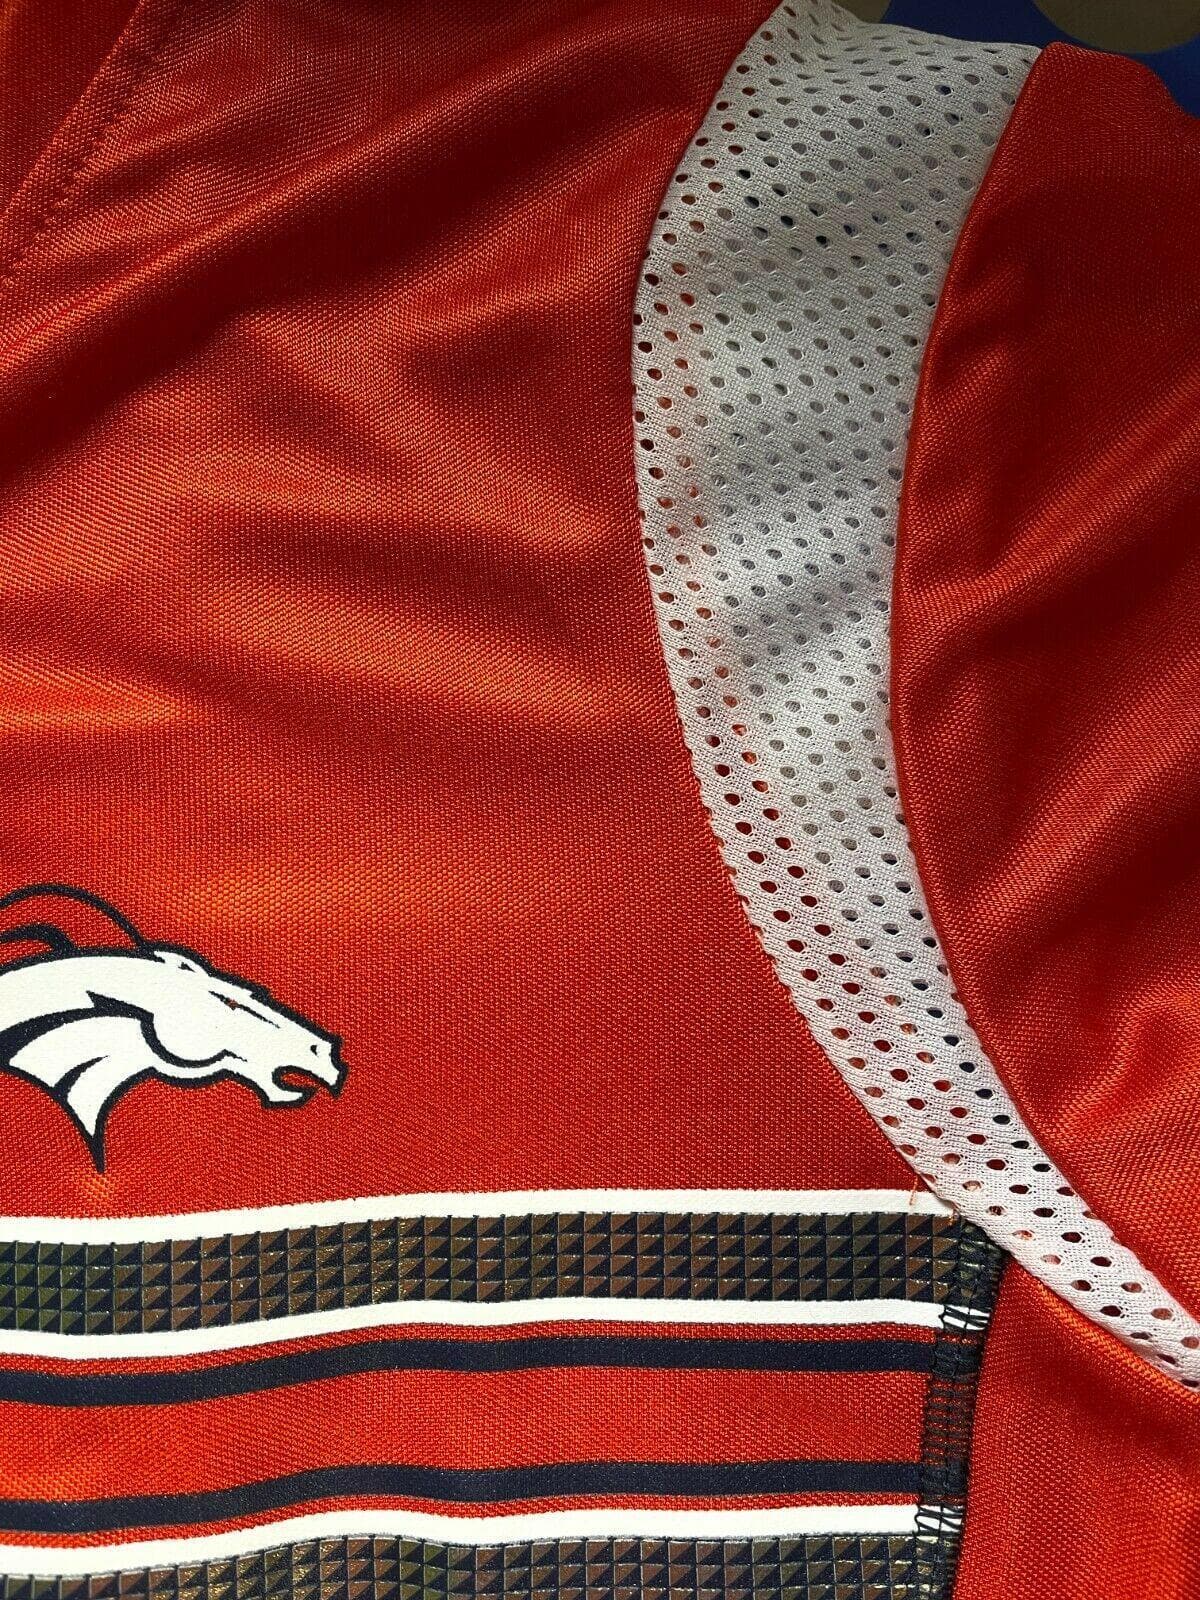 NFL Denver Broncos Peyton Manning #18 Jersey-Style Top Women's Medium